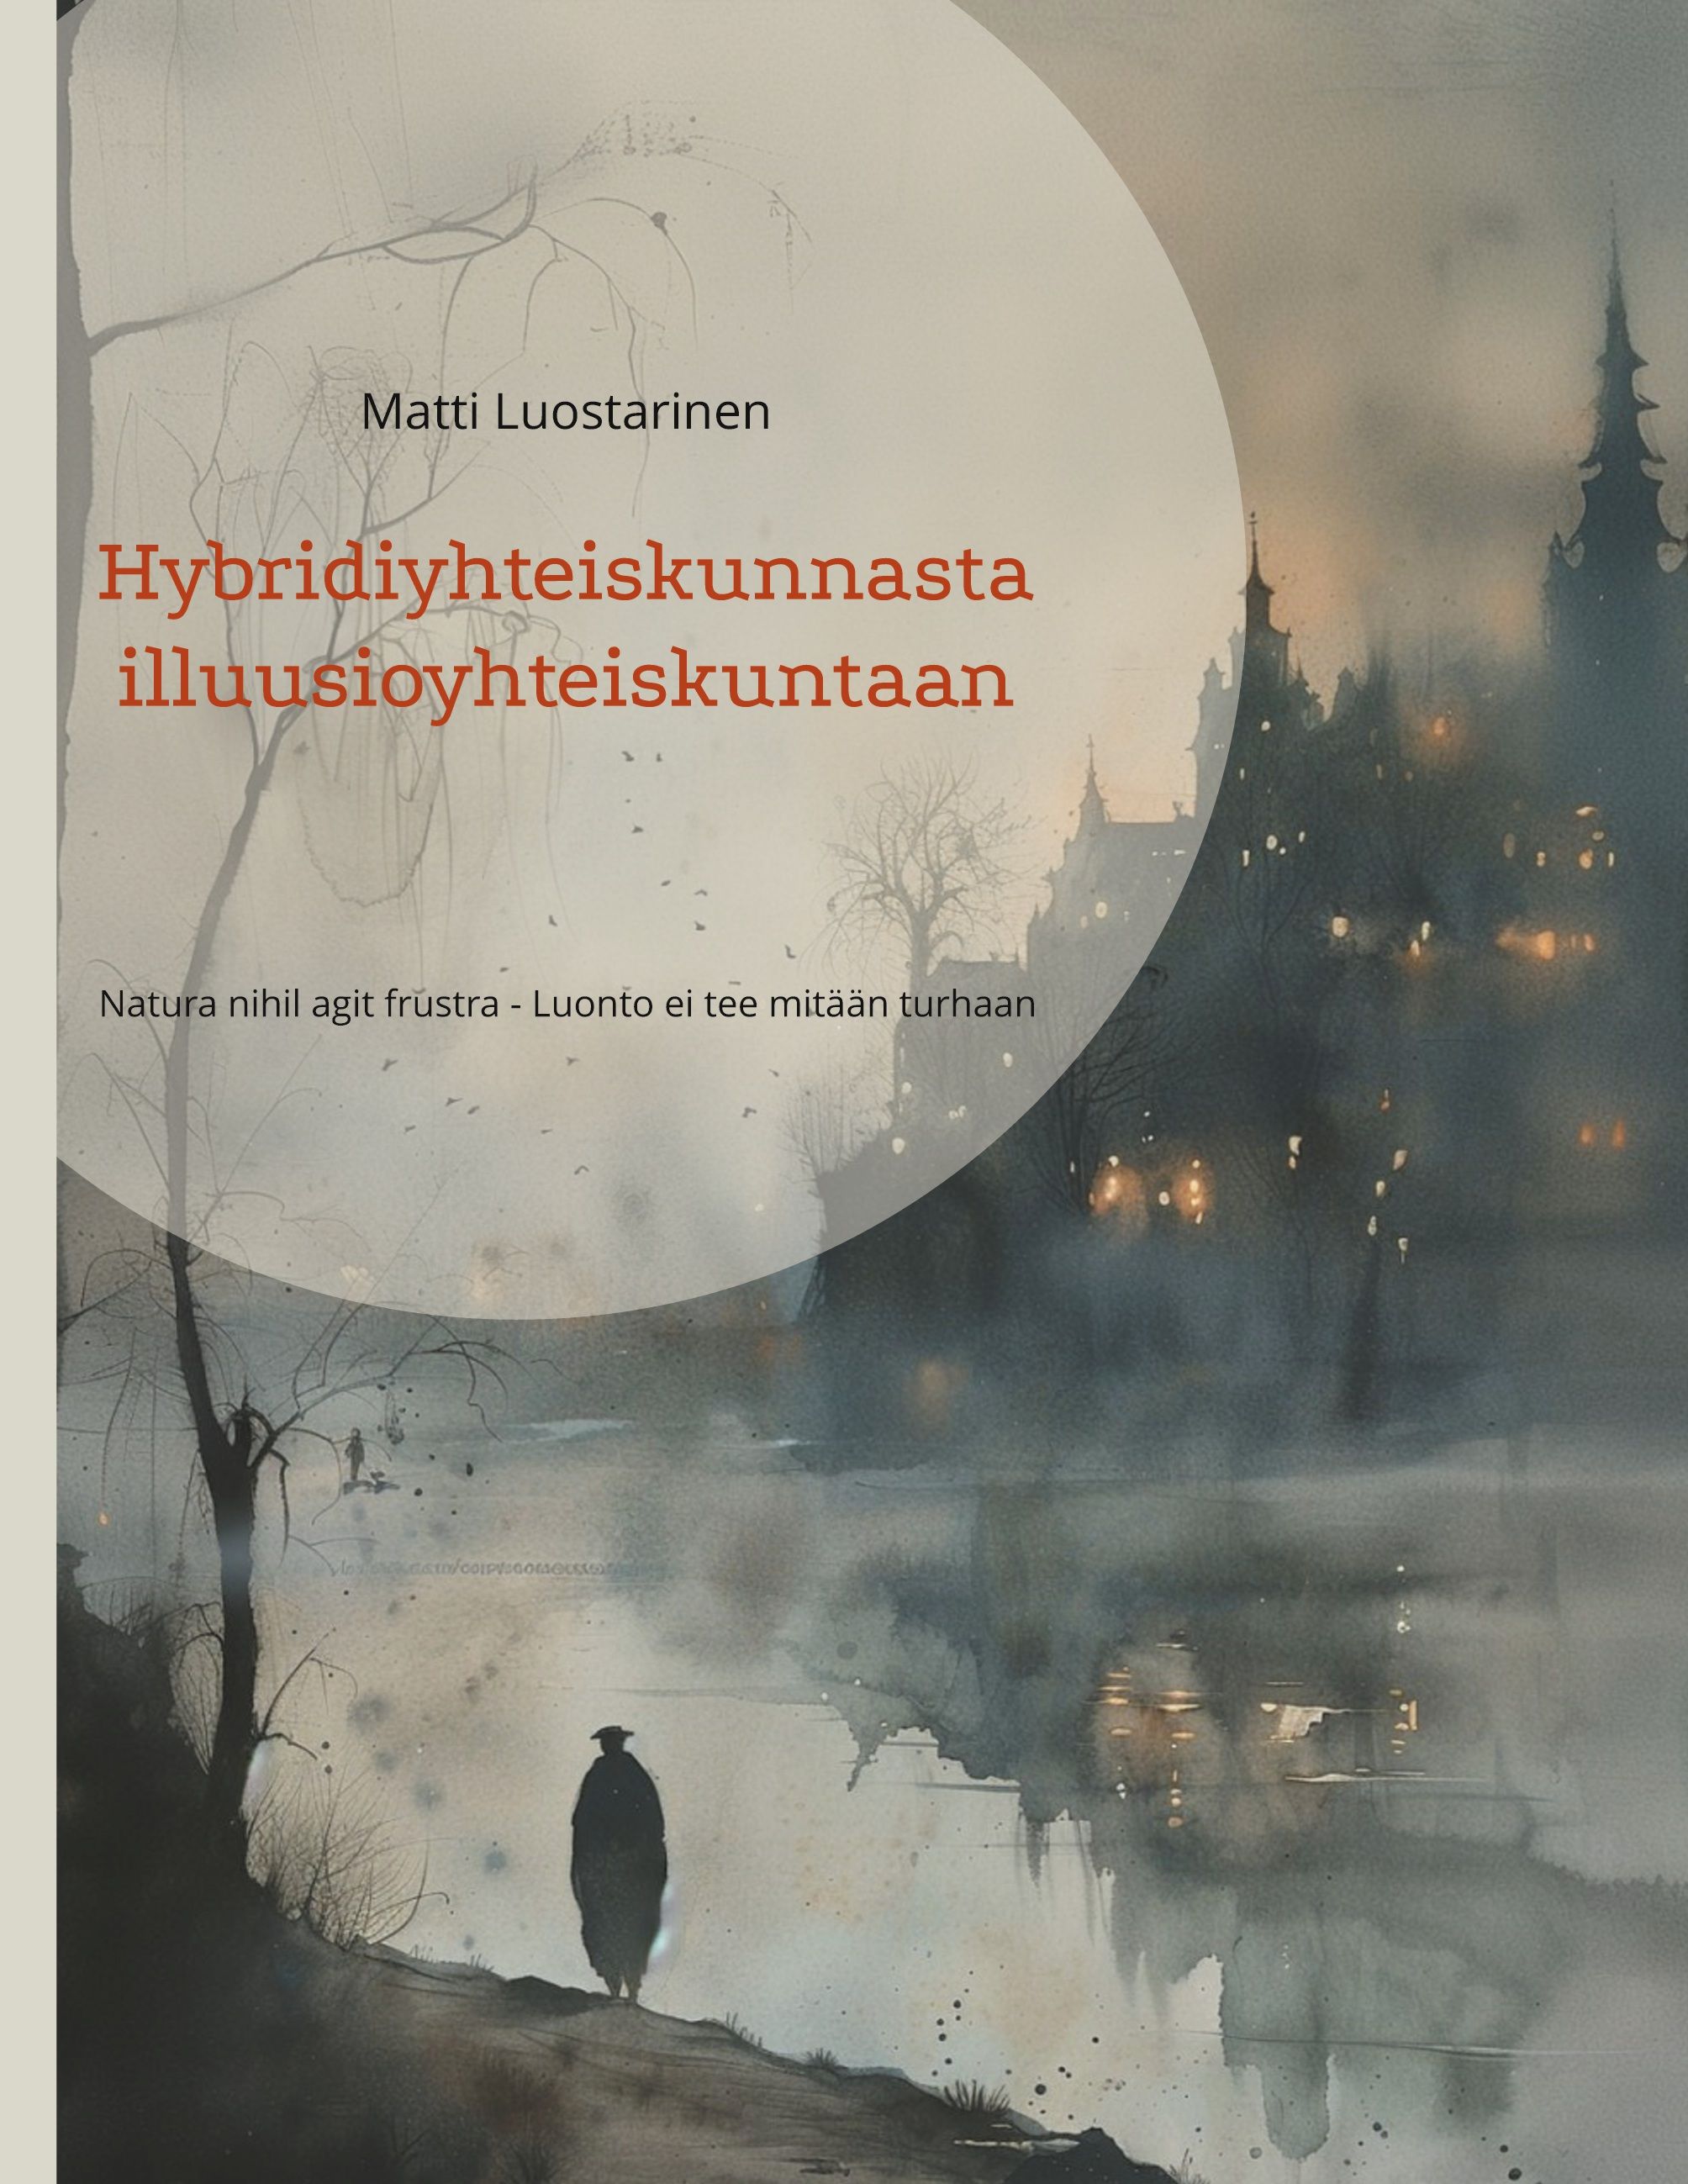 Matti Luostarinen : Hybridiyhteiskunnasta illuusioyhteiskuntaan